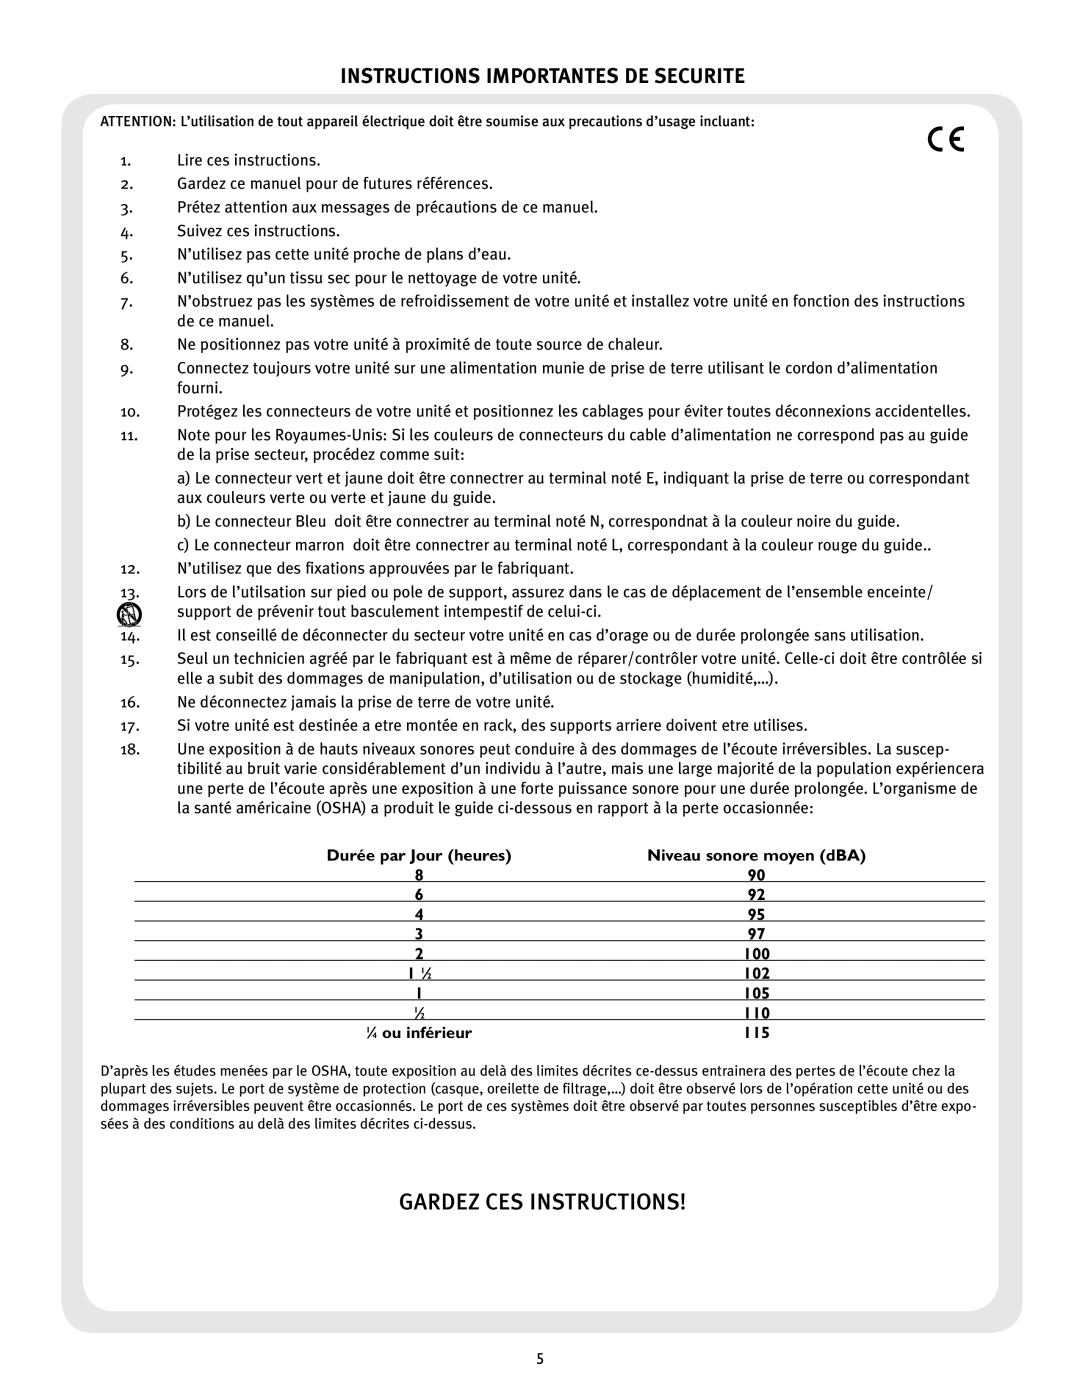 Peavey PV 215 EQ manual Gardez Ces Instructions, Instructions Importantes De Securite 